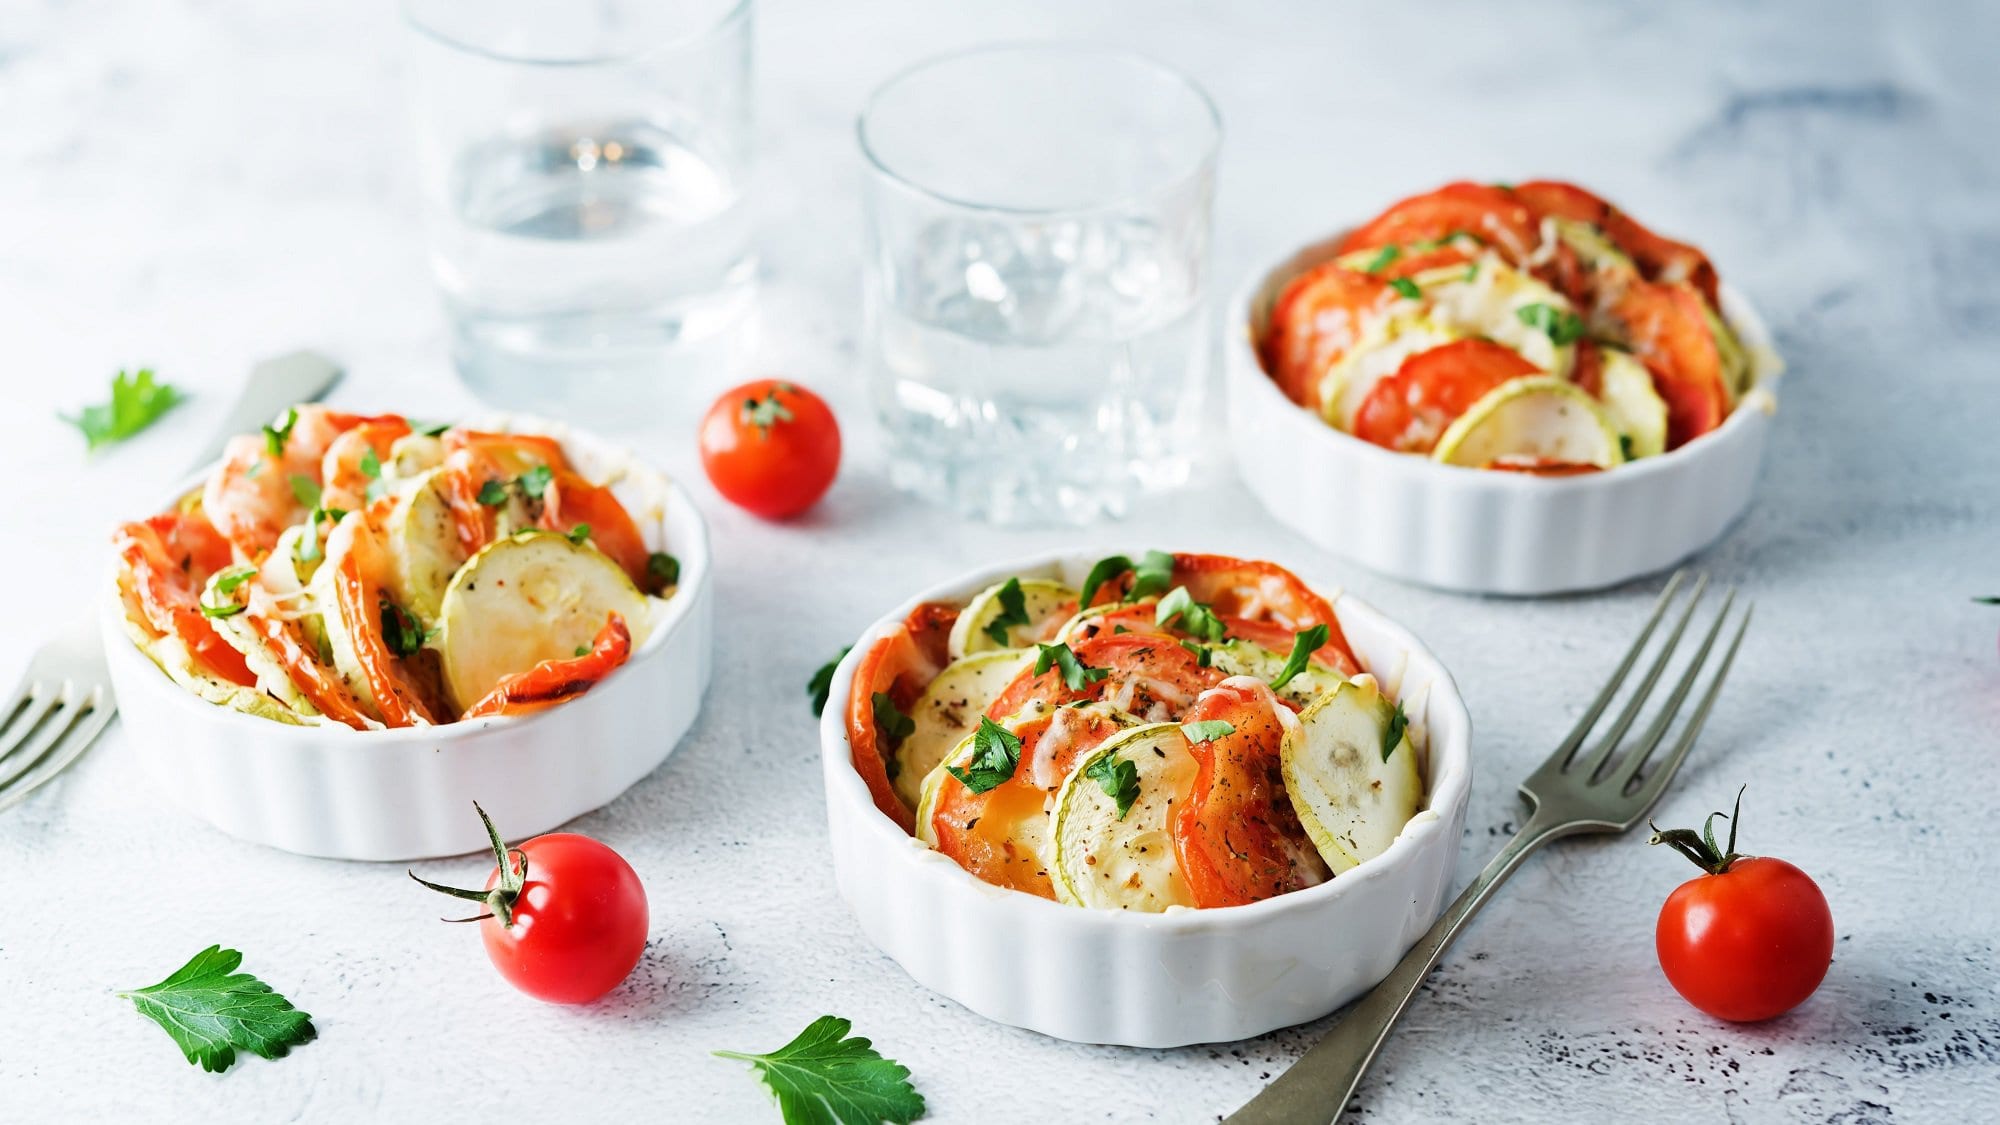 Mini-Gemüse-Gratins mit Zucchini und Tomate in kleinen runden weißen Auflaufformen, drumherum liegen eine Gabel, Tomaten und Petersilienblätter.